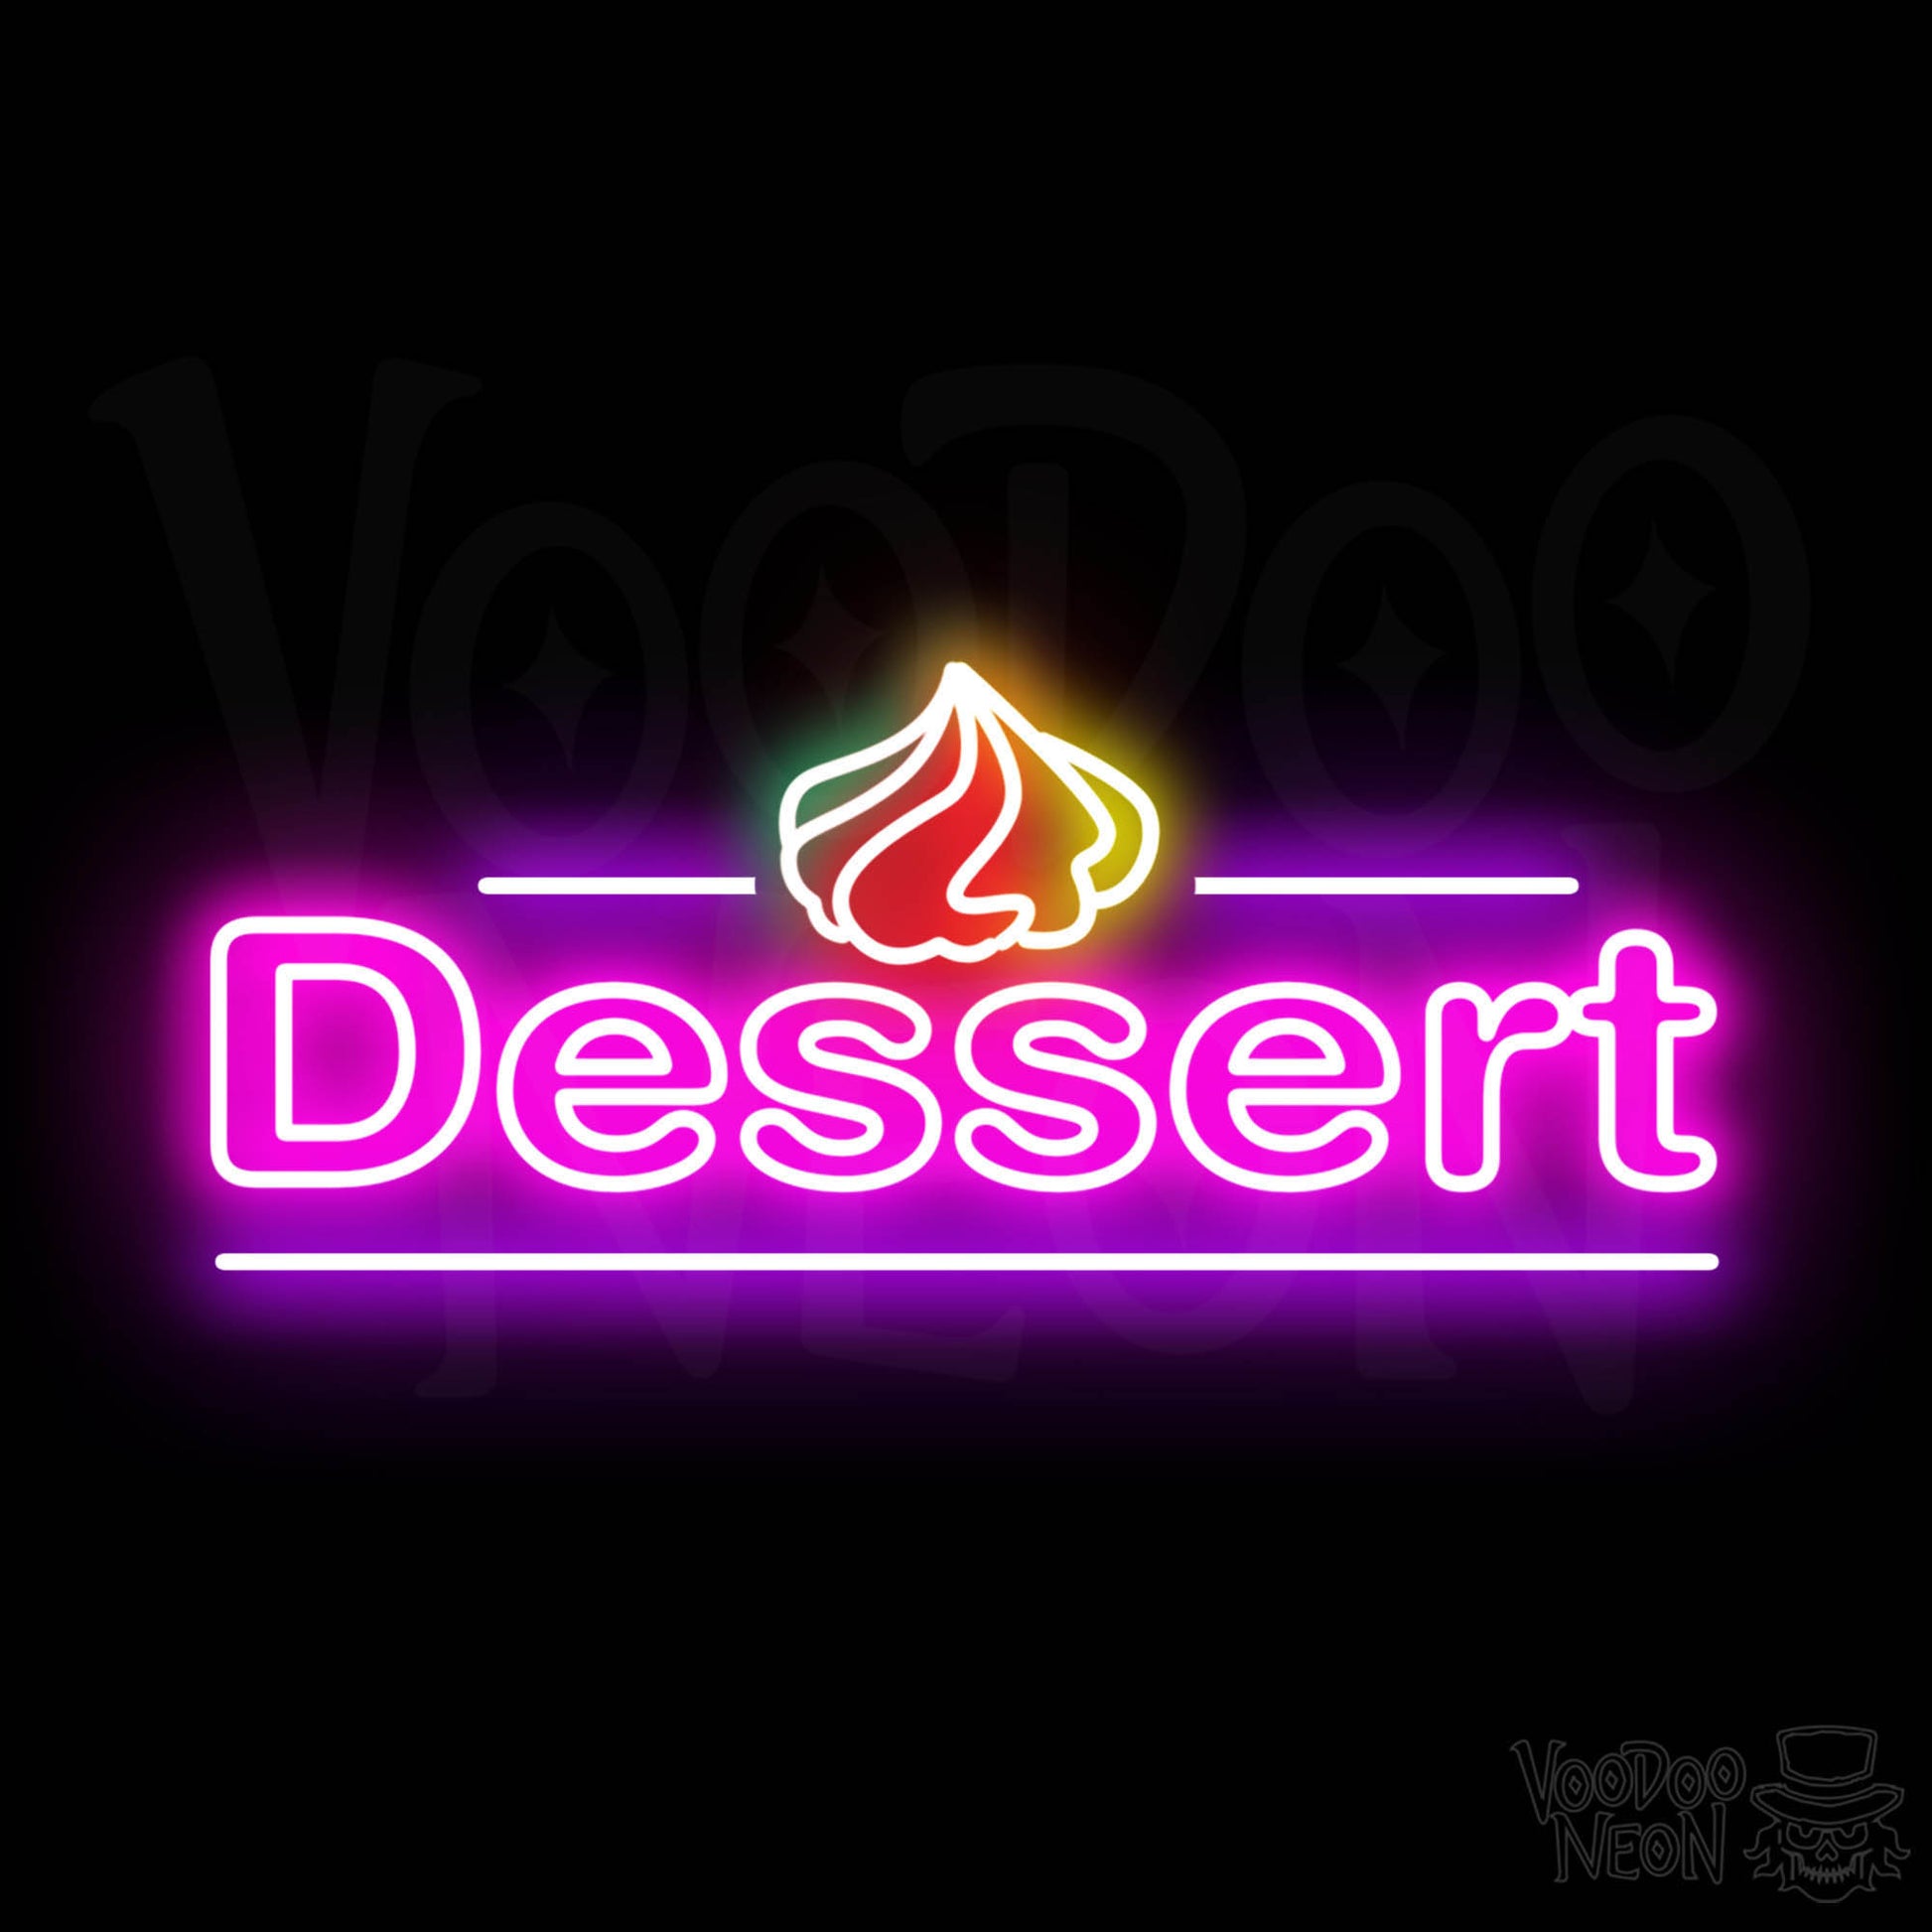 Dessert LED Neon - Multi-Color